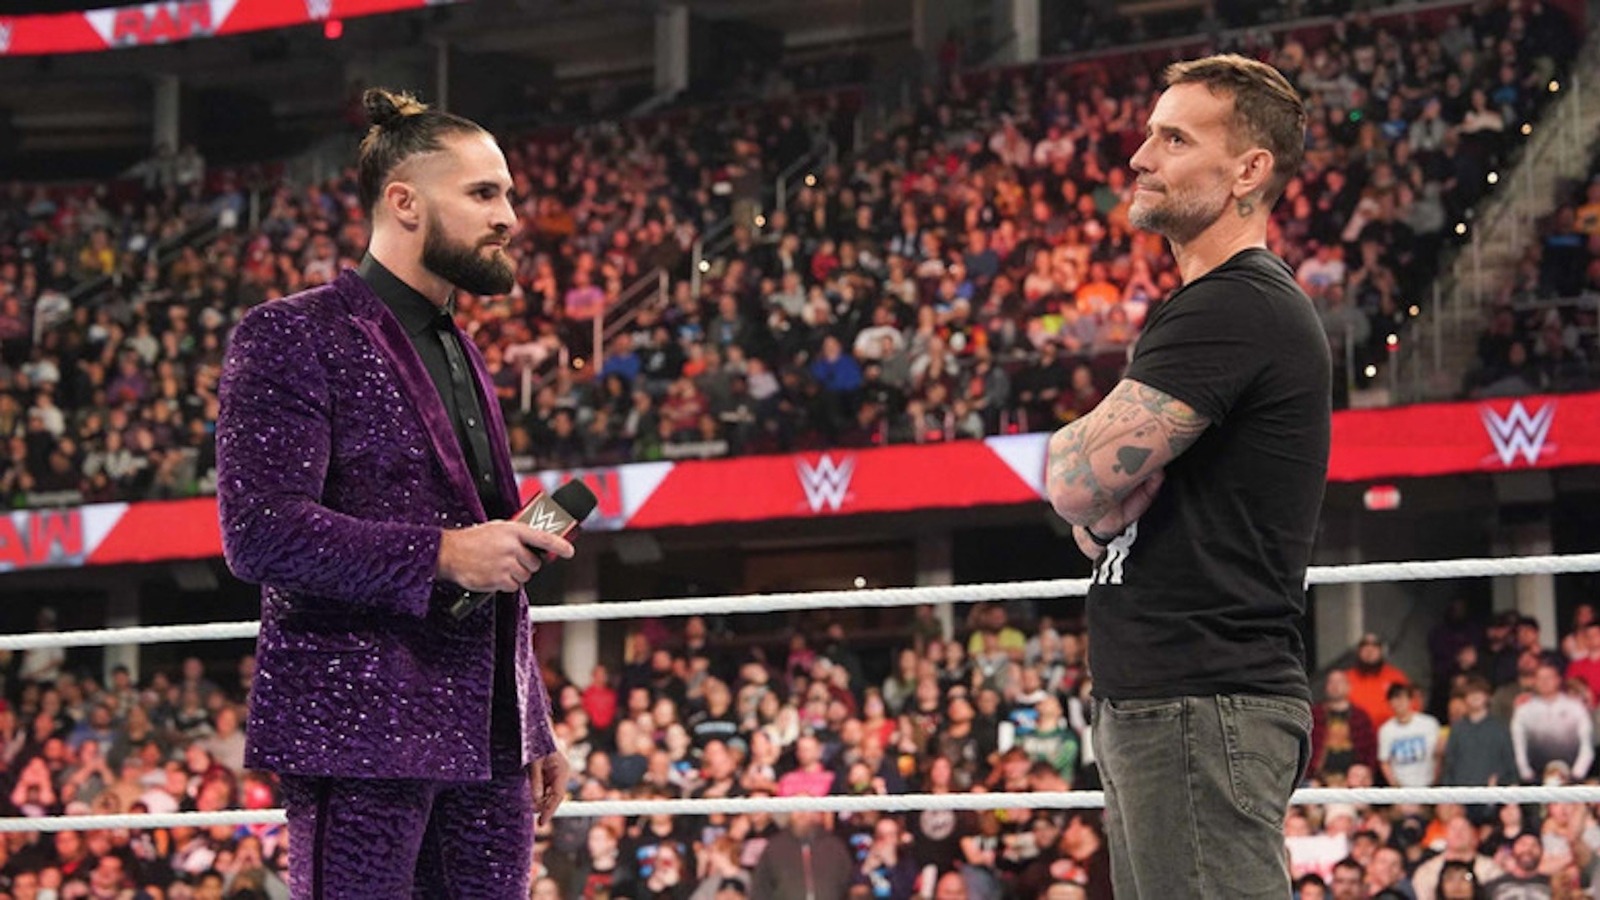 La pelea entre Seth Rollins y CM Punk en la WWE encarna la 'próxima evolución' de la lucha libre